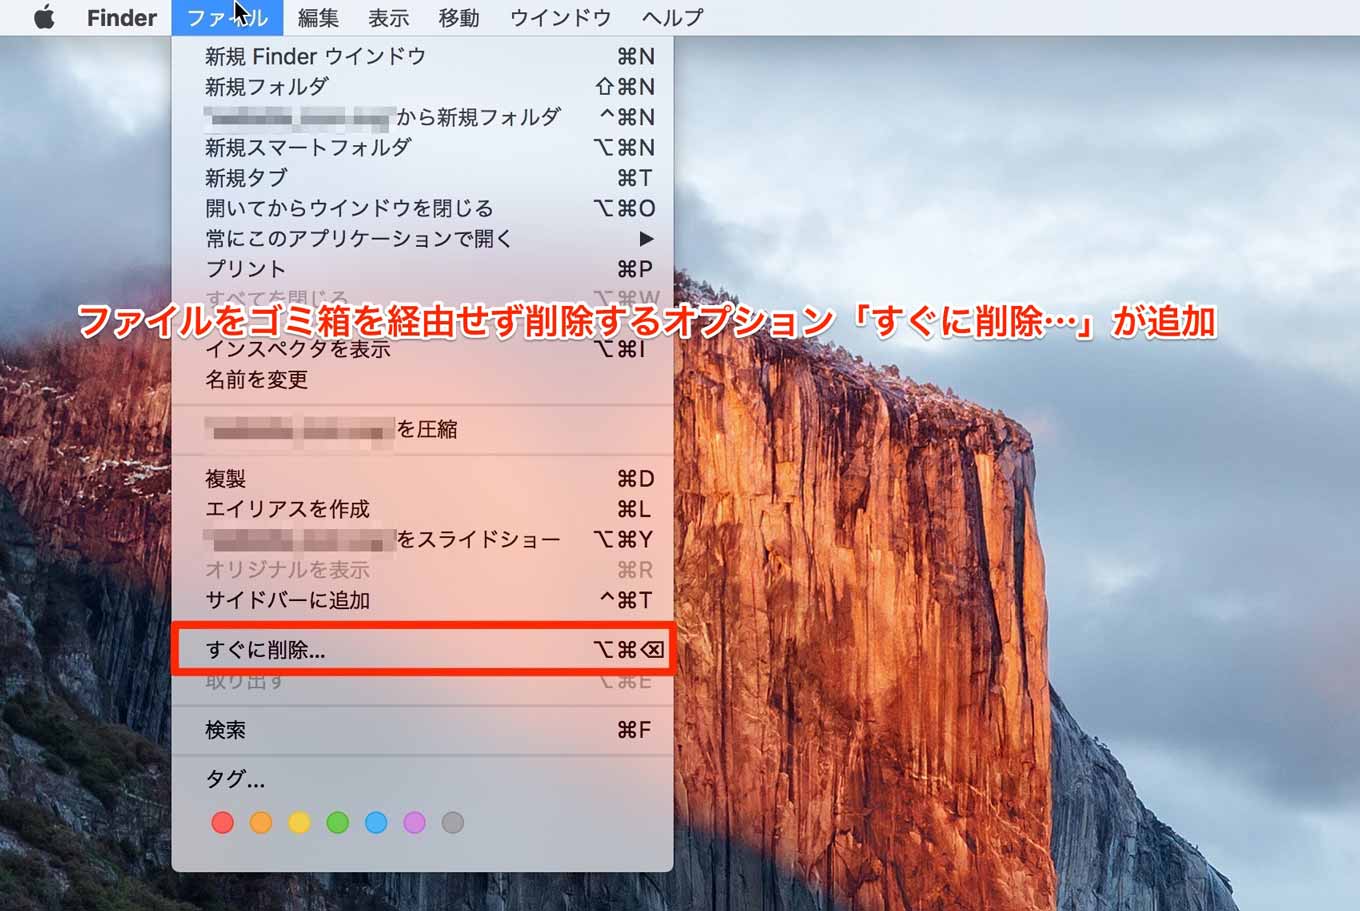 OS X El Capitan：ファイルをゴミ箱を経由せず削除するオプション「すぐに削除…」が追加